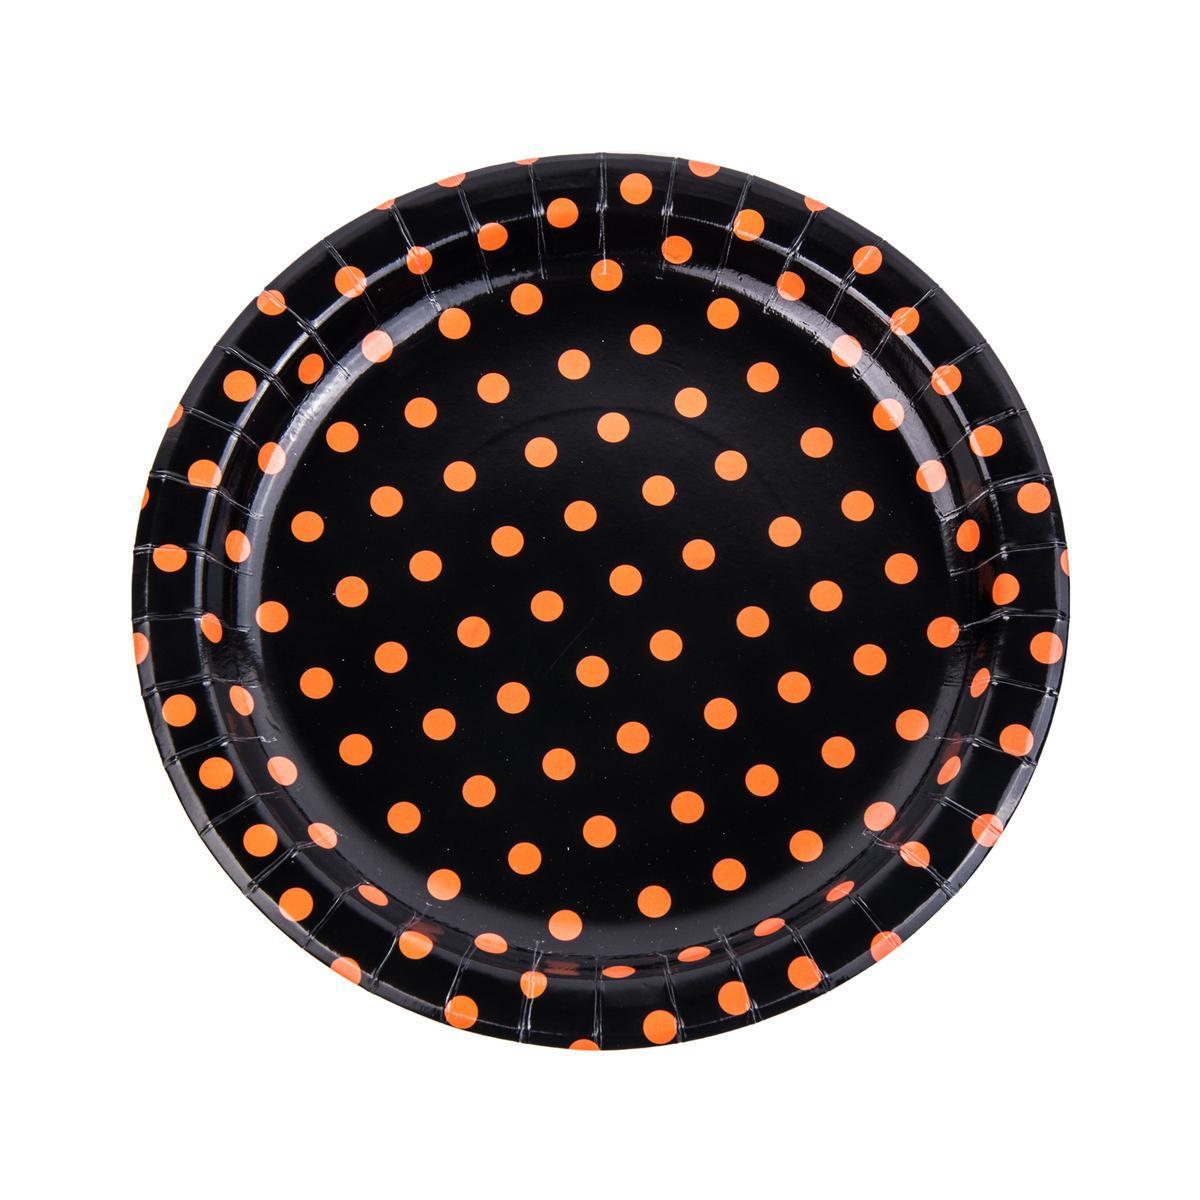 8 assiettes jetables - Carton - Ø 23 cm - Orange et noir